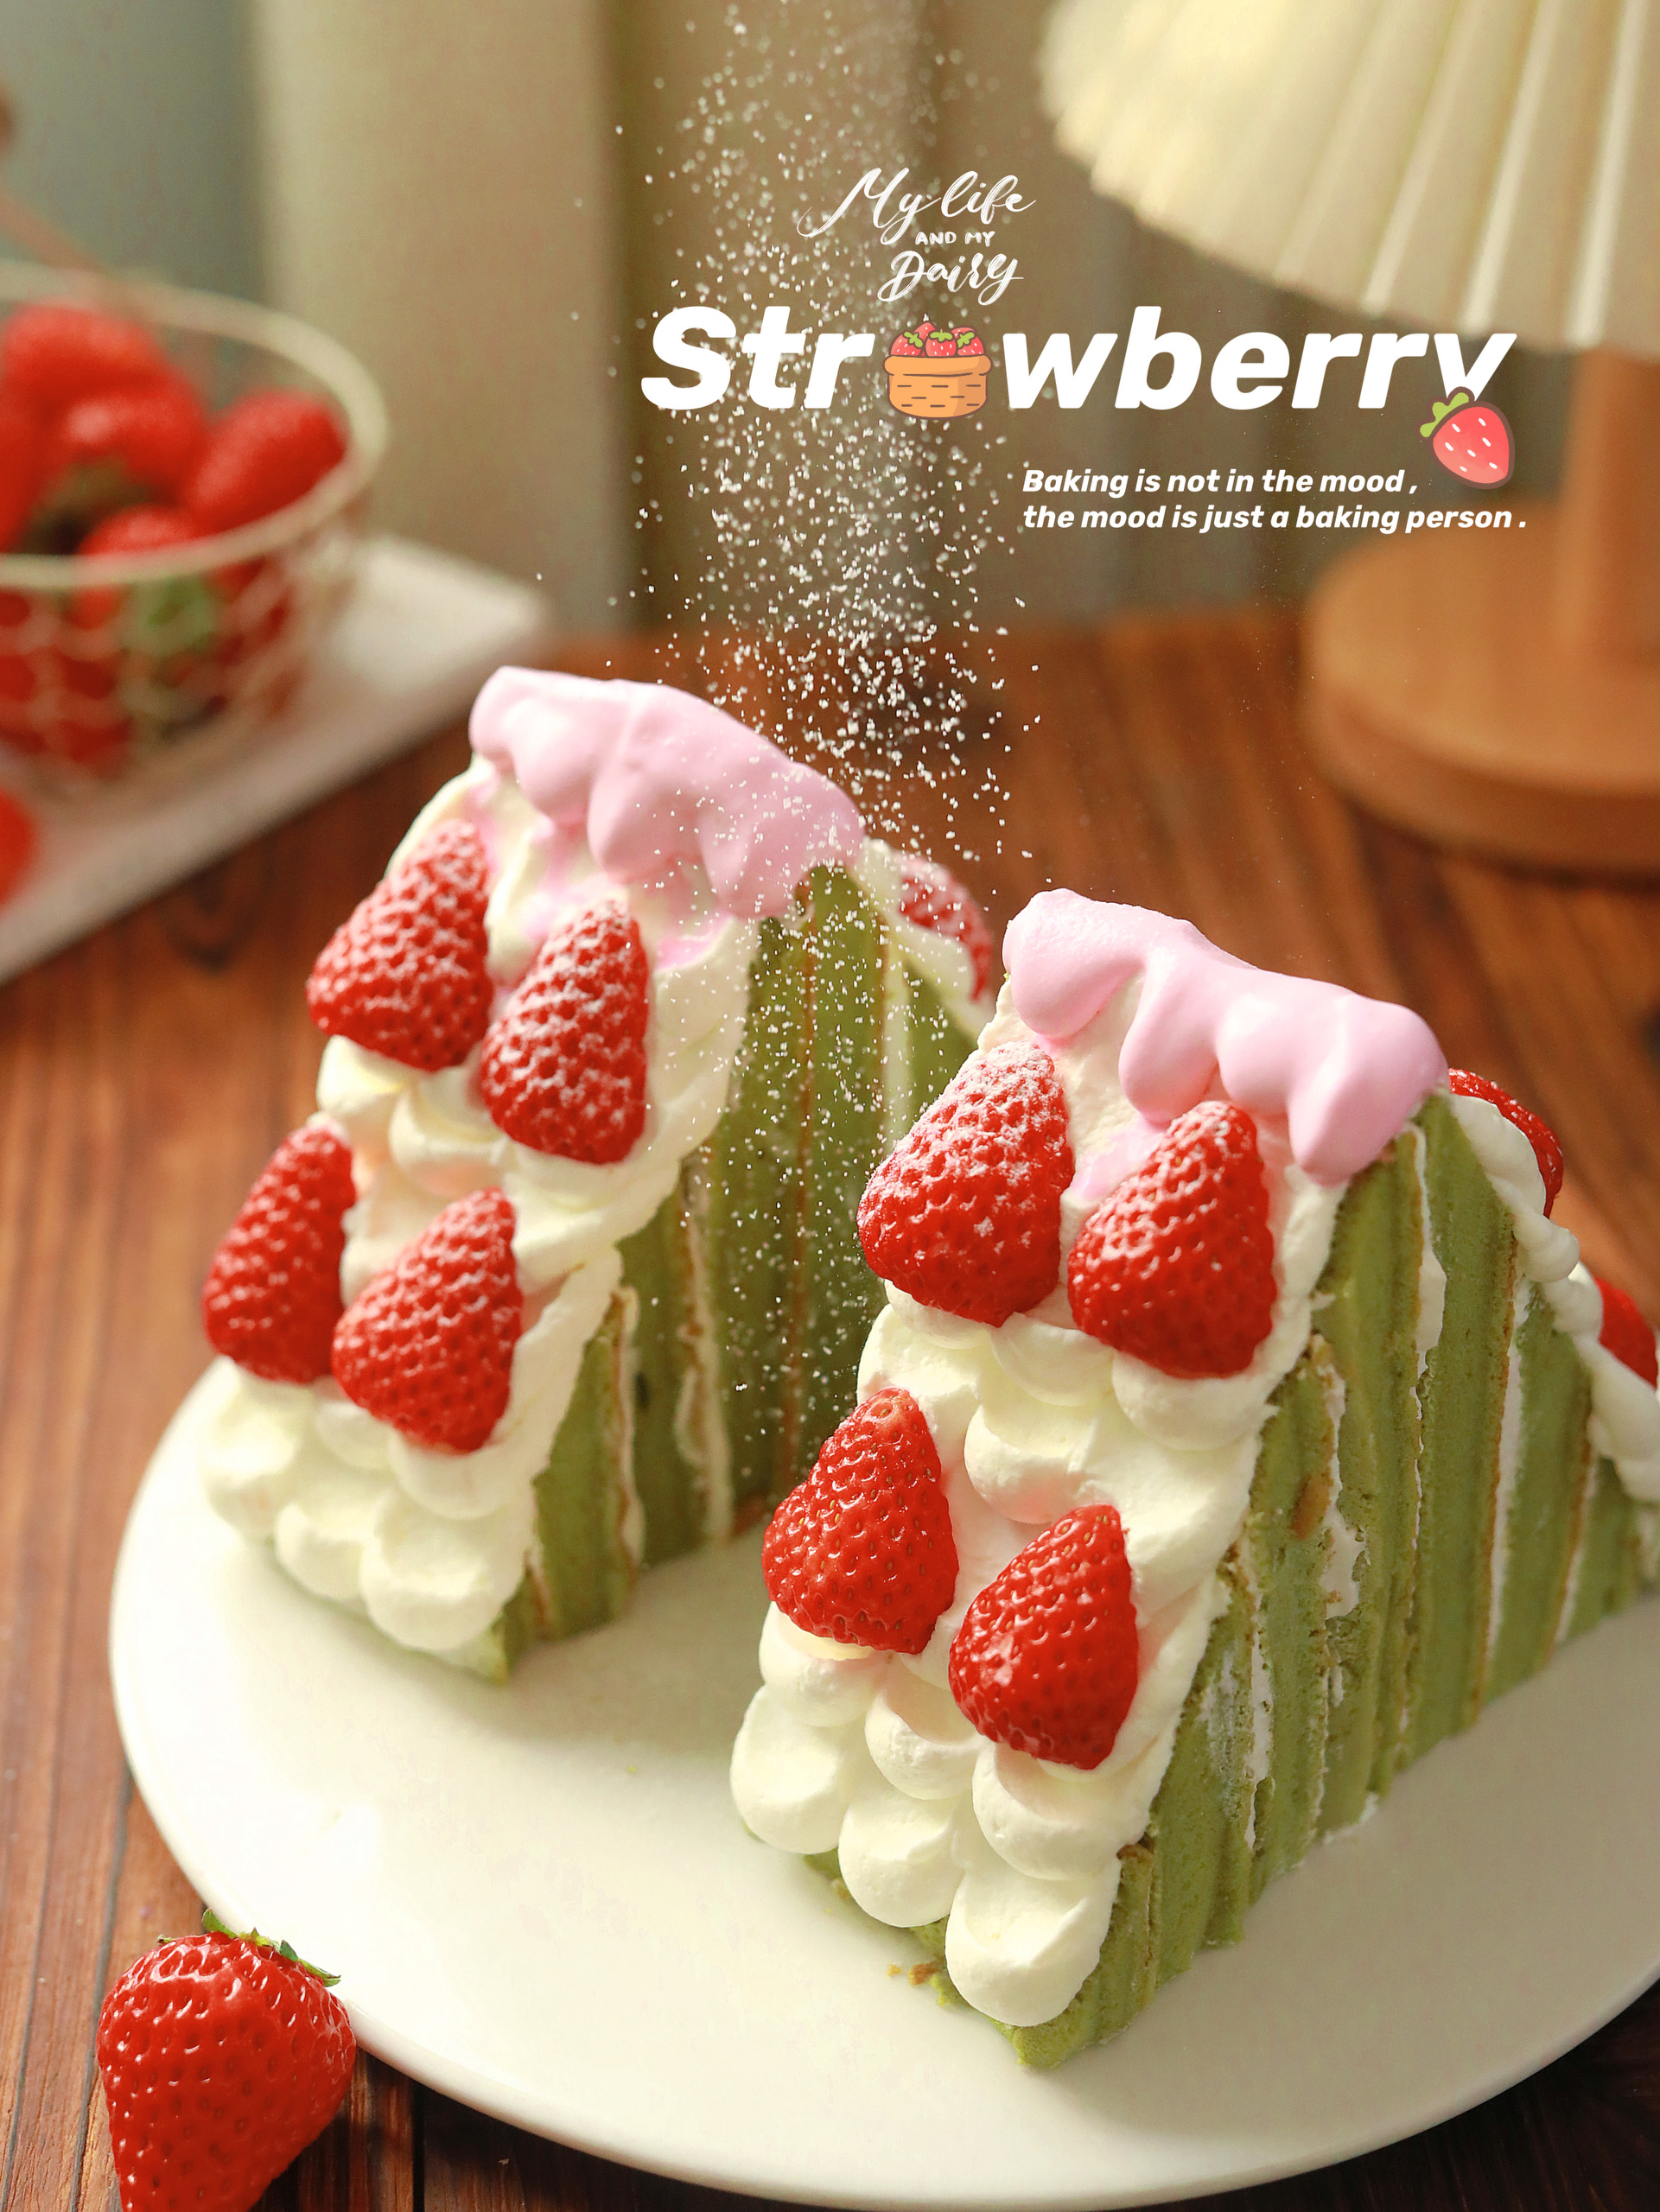 抹茶草莓雪山蛋糕🍓